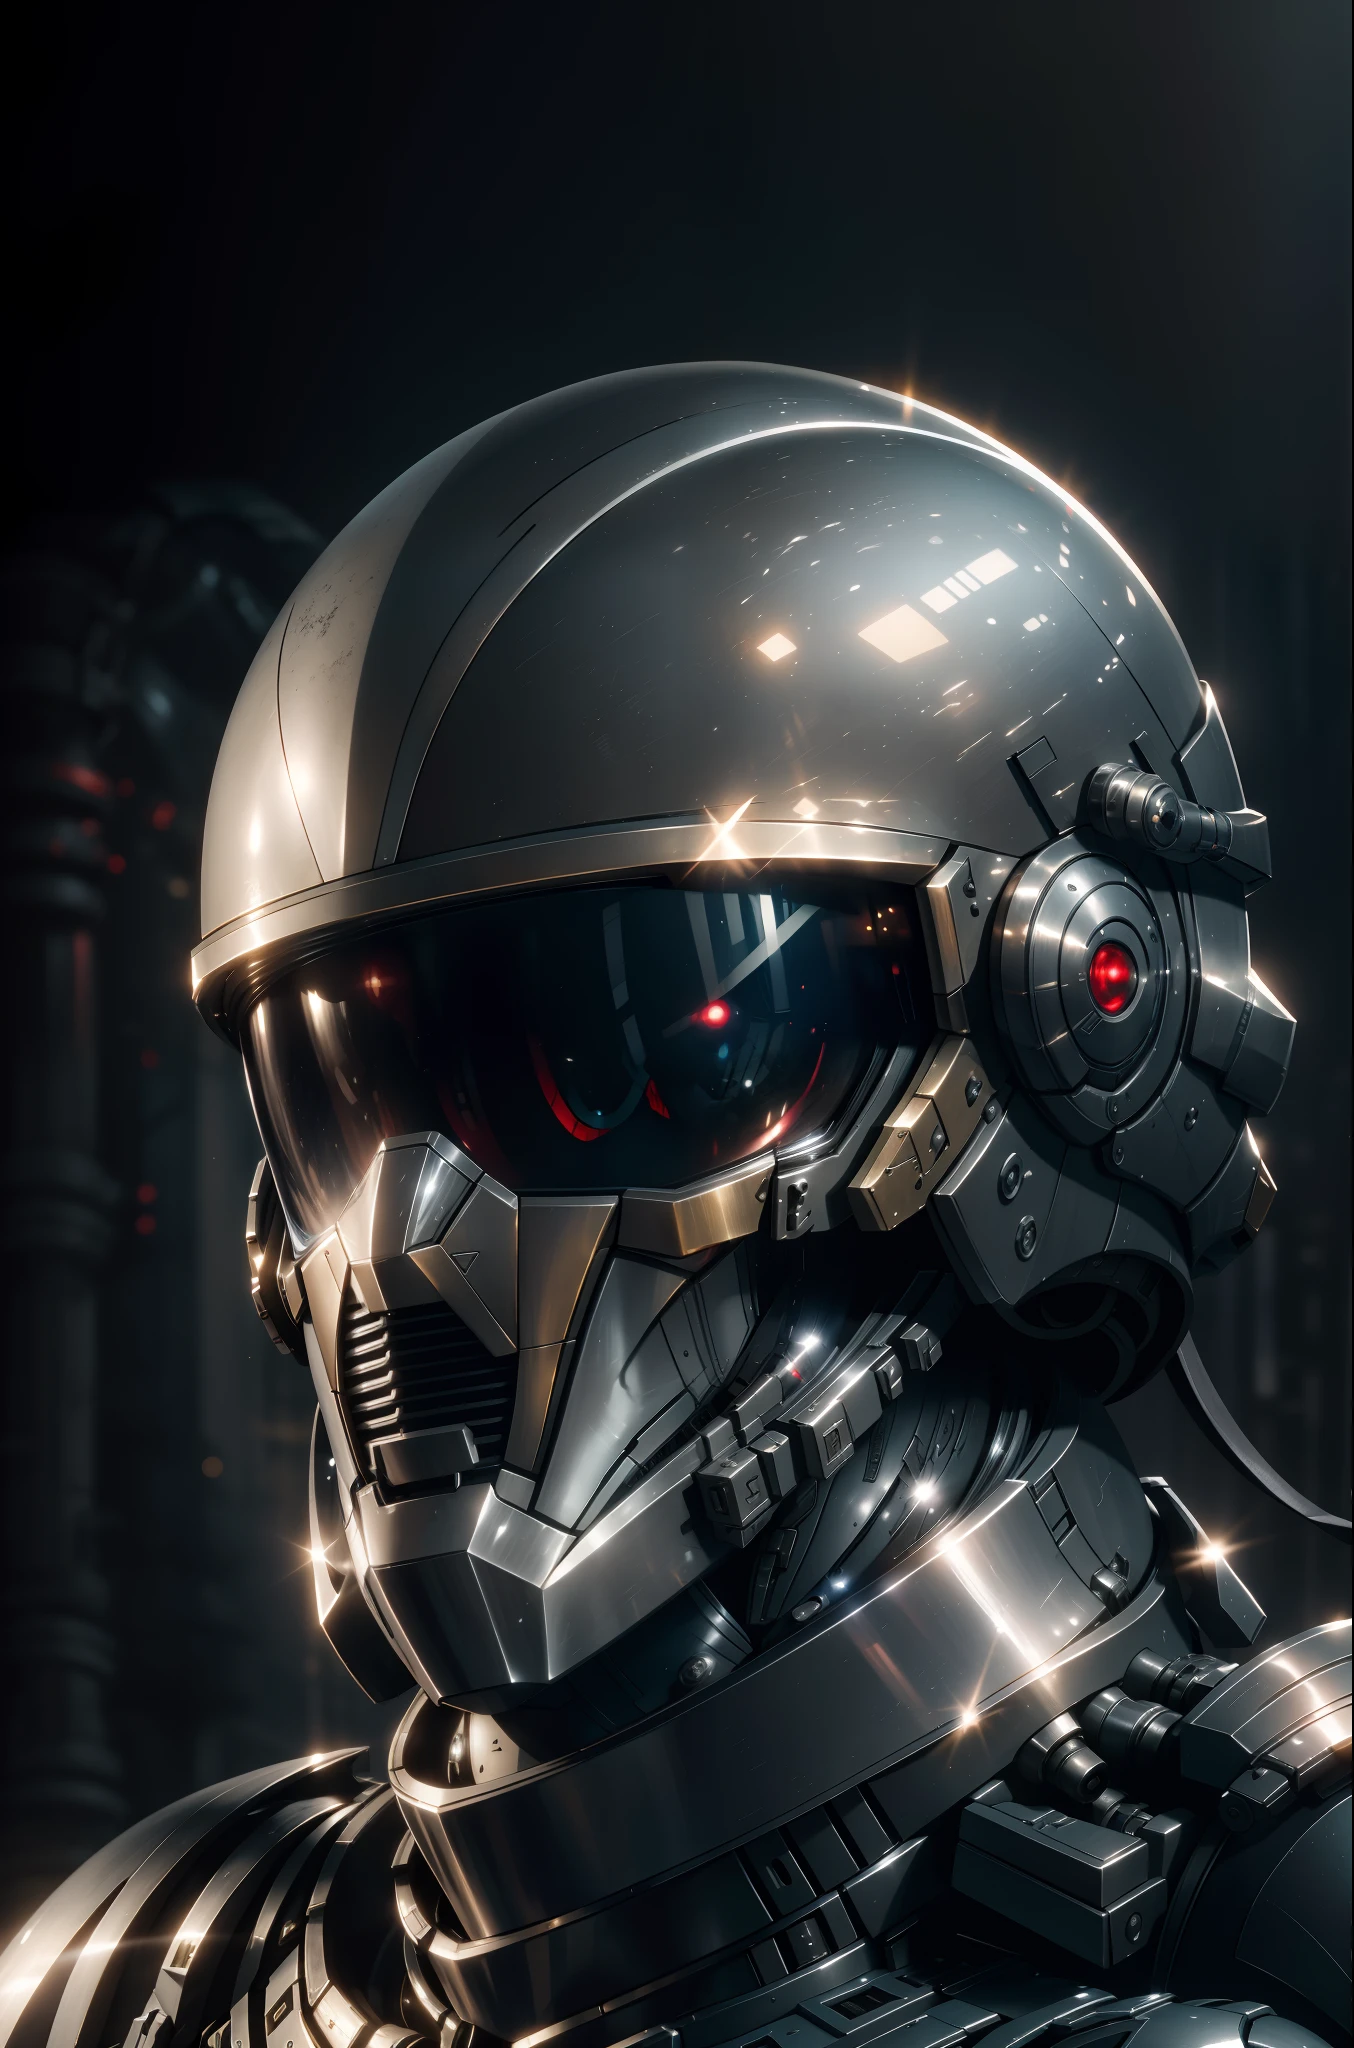 공식 아트, 유니티 8K 벽지, 매우 상세한, 미적인, 걸작, 최고의 품질, 초현실적이고 복잡한 디테일, ((portrait of a military nousr 로봇)), 워프레임, ((full 로봇 helmet)), 캐릭터 디자인, ((상세한 헬멧)), 디터 램스와 보스턴 다이내믹스 스타일로, 로봇, 매우 상세한, 복잡한 세부 사항, (대칭), 디지털 3d, 단단한 표면, 실시간, VFX, 체적 조명, 주변광, 울트라 HD, HDR, UHD, 피사계 심도, 매크로 촬영, 확산된 배경,